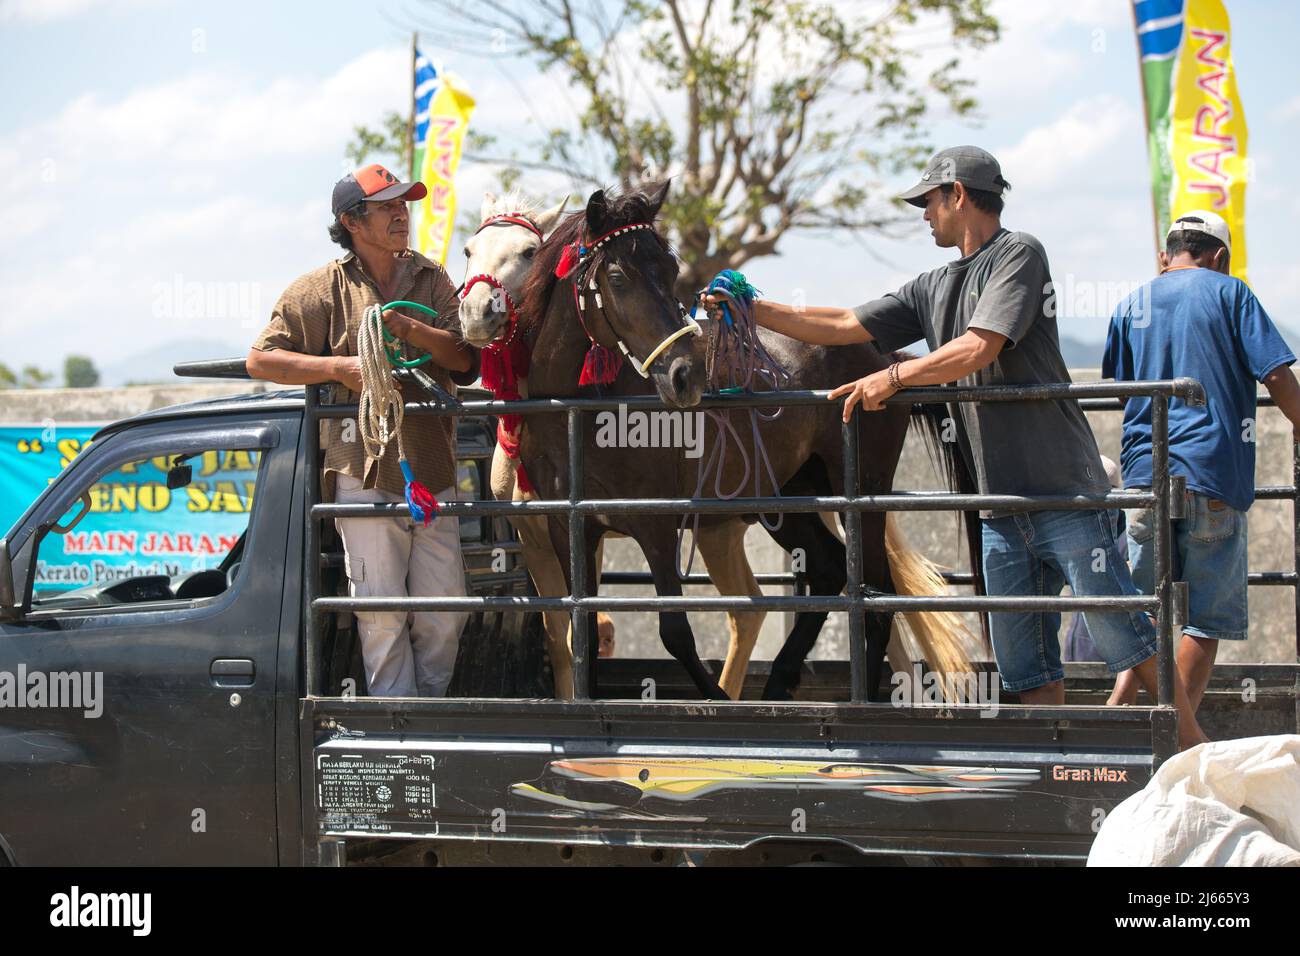 Sumbawa Besar, Indonesia - September 16, 2017: Horse racing in Sumbawa Besar, Indonesia. Stock Photo